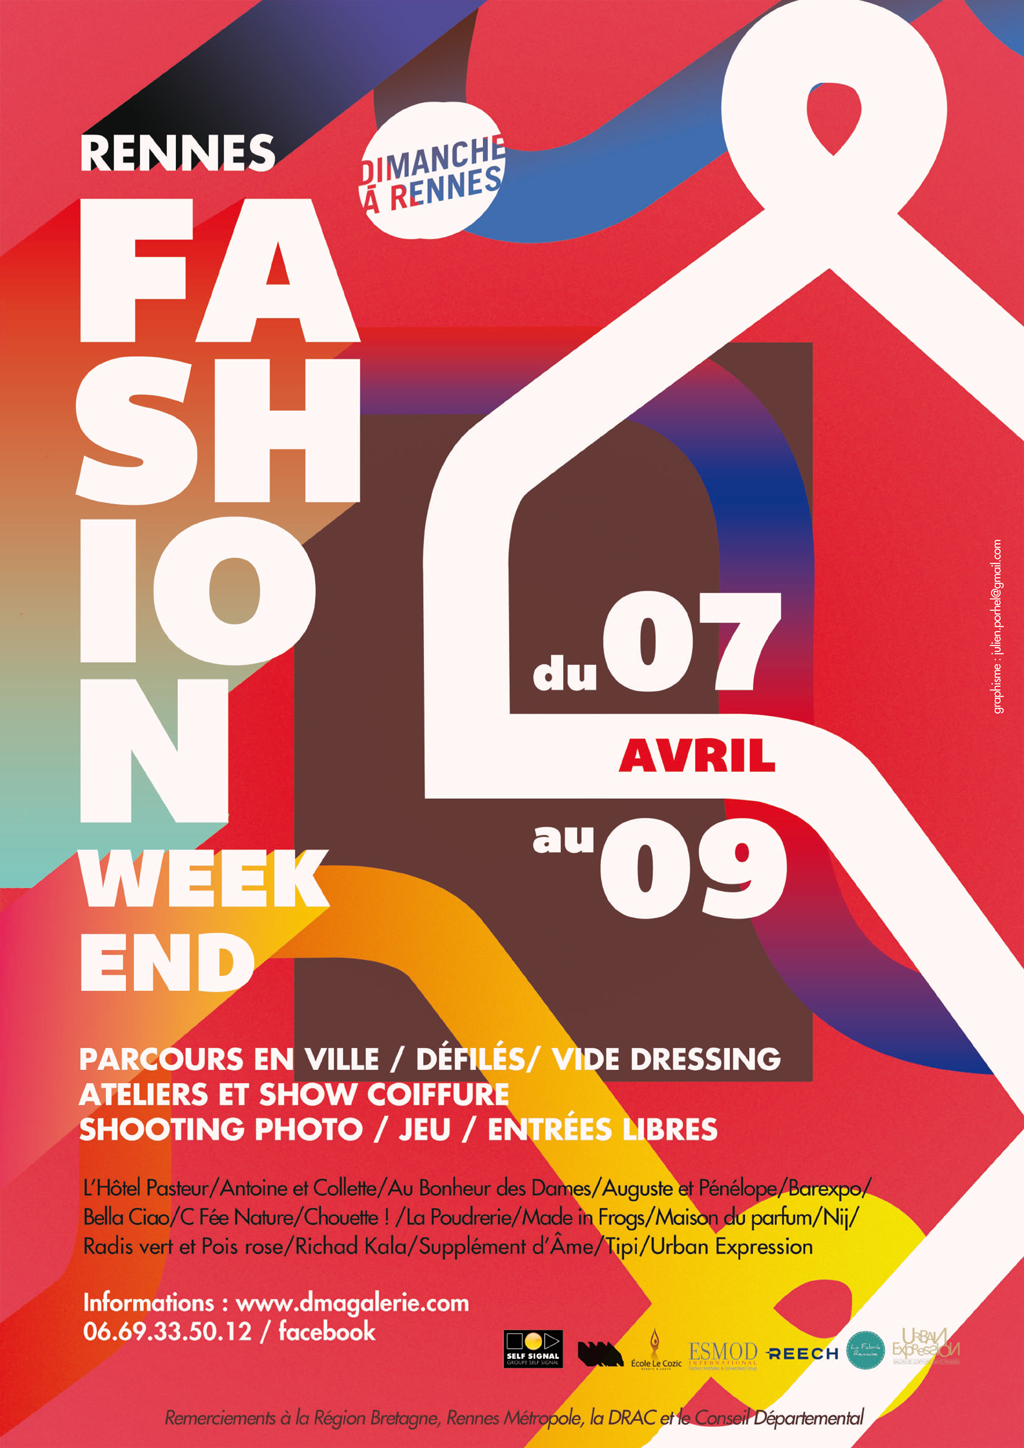 fashion-week-end-rennes-2017